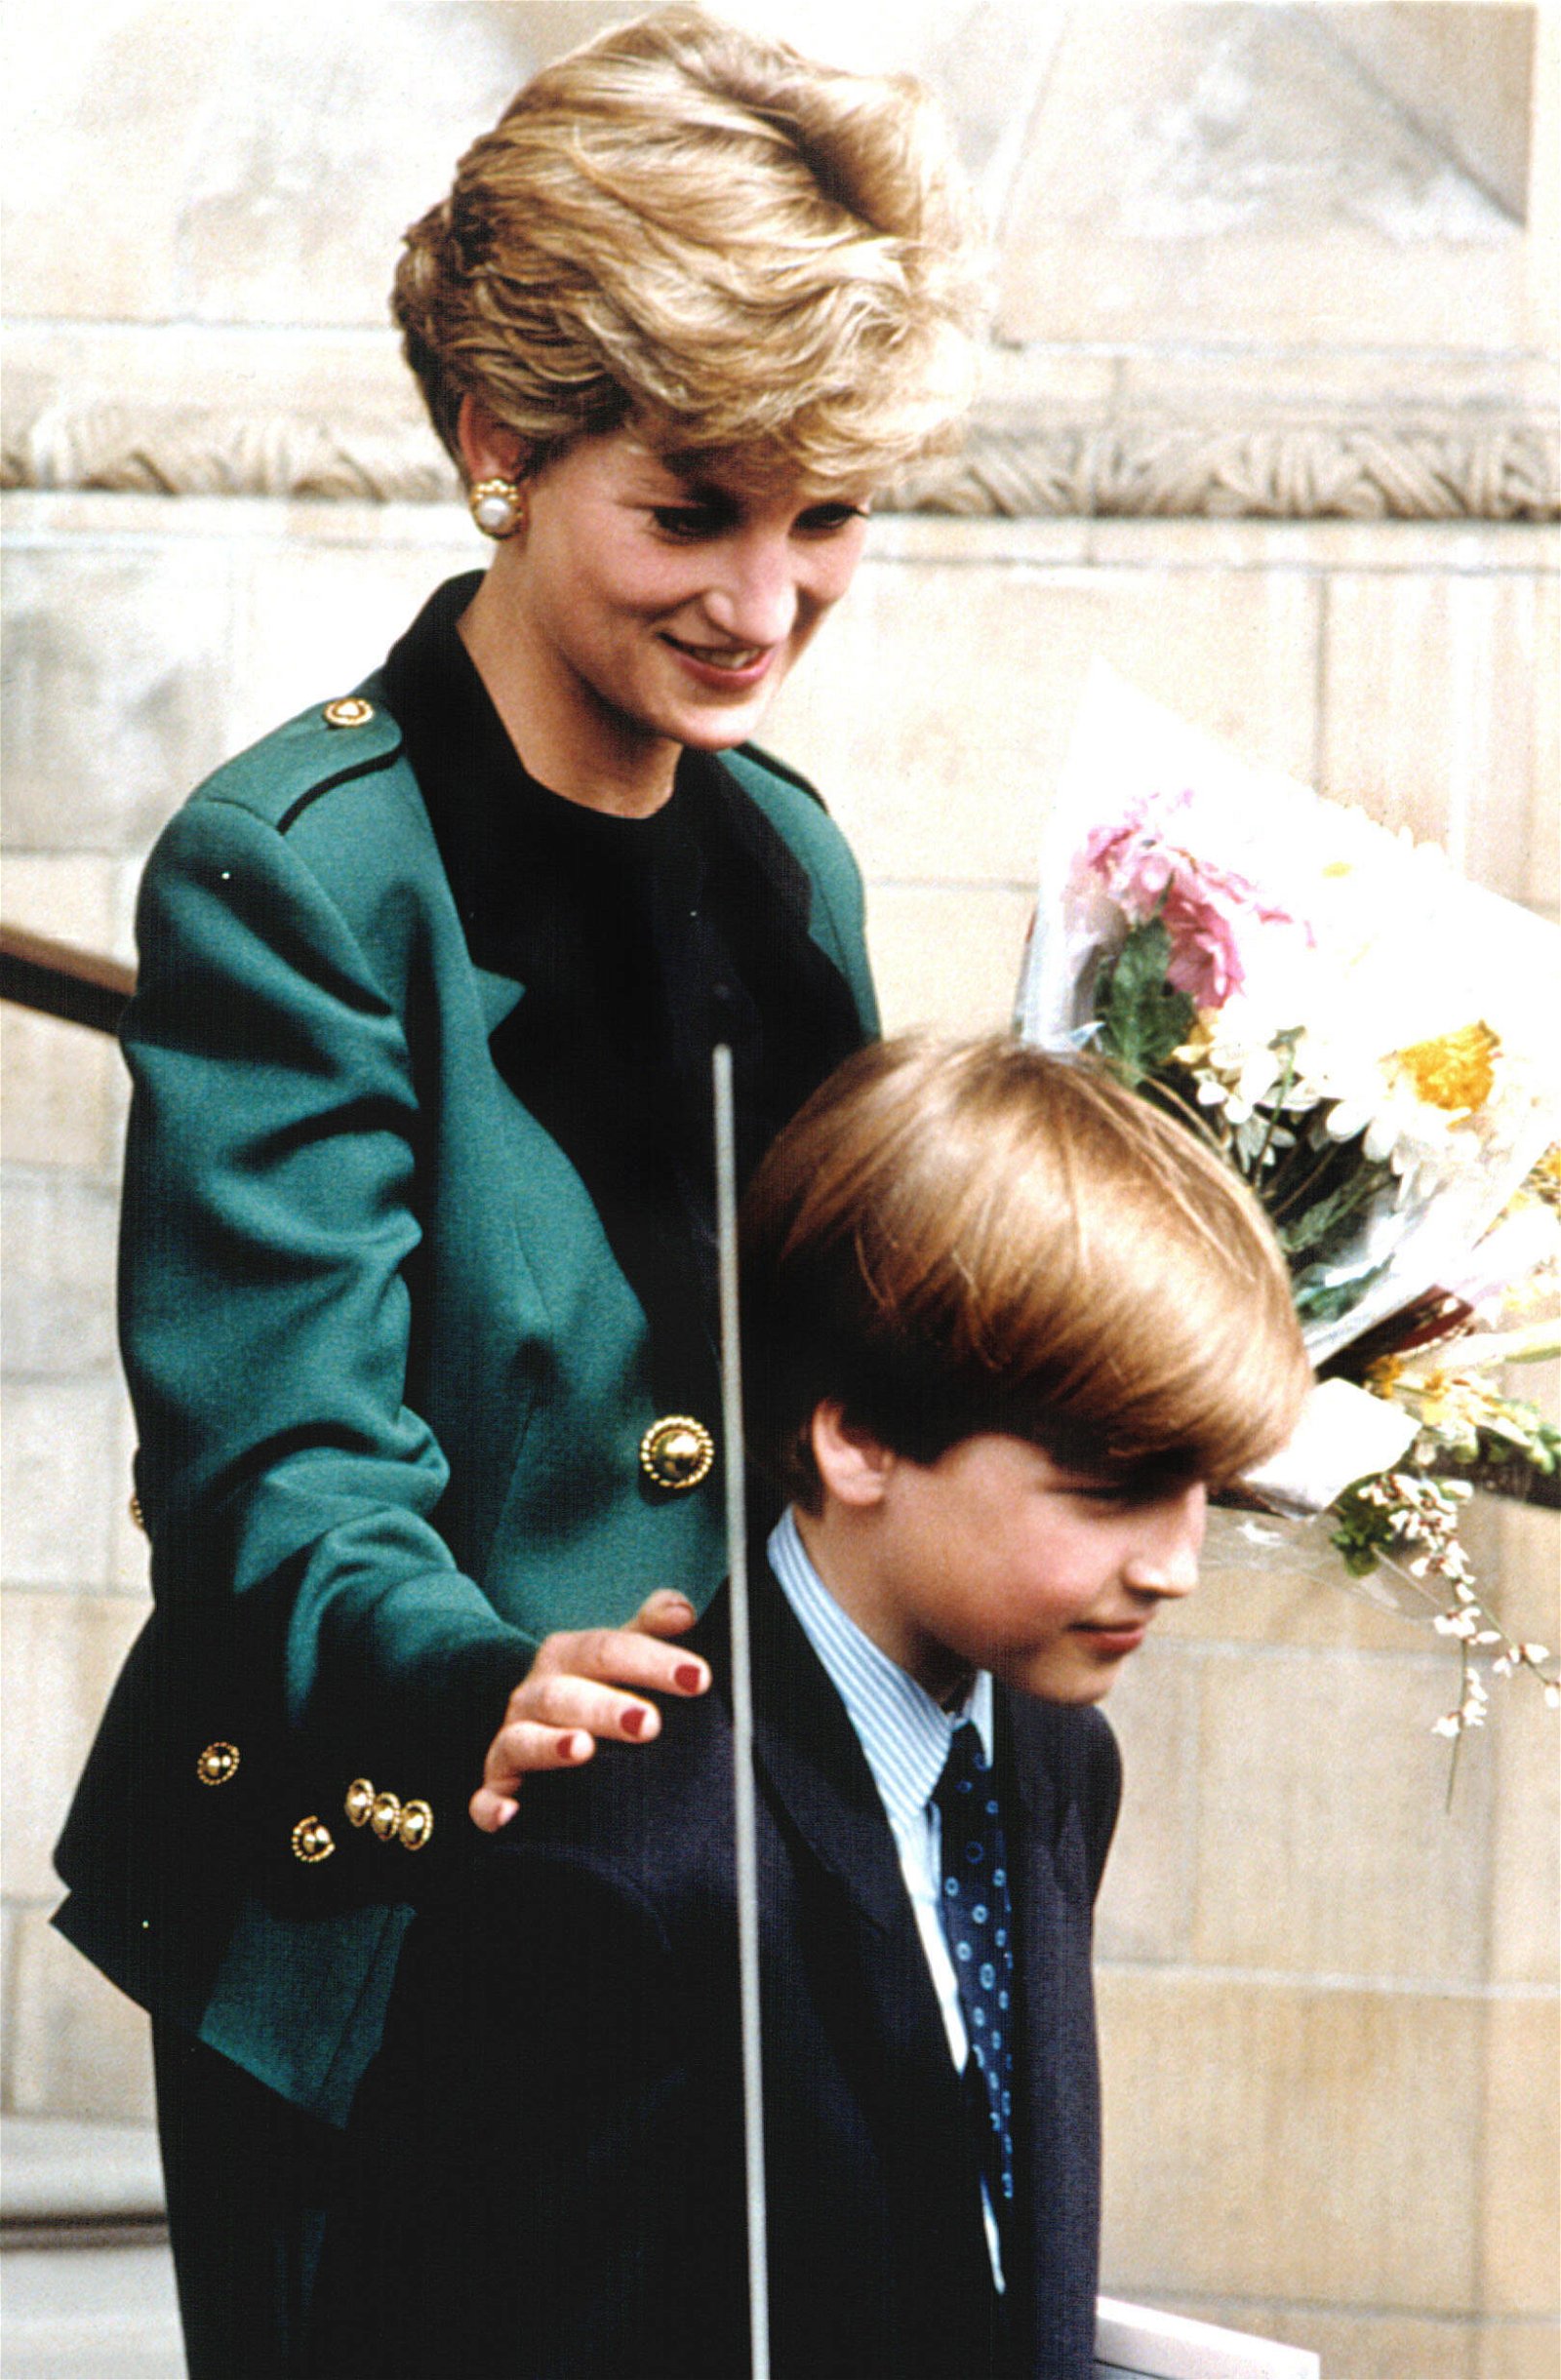 Princess Diana with Prince William